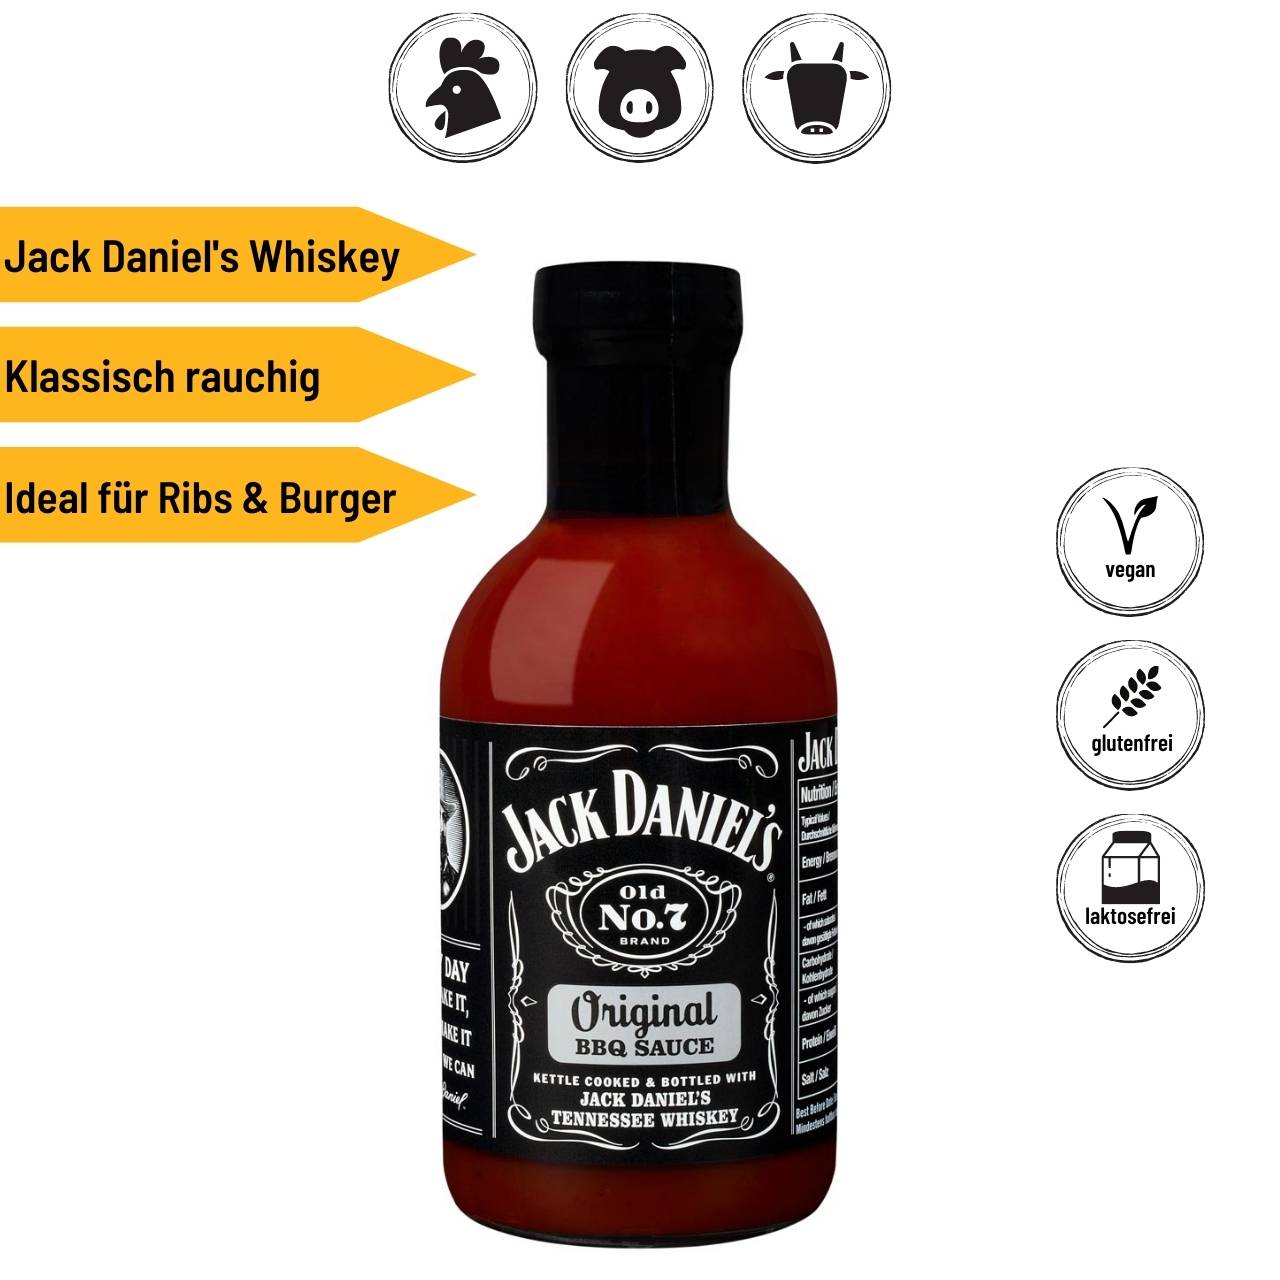 Jack Daniel's Premium Set